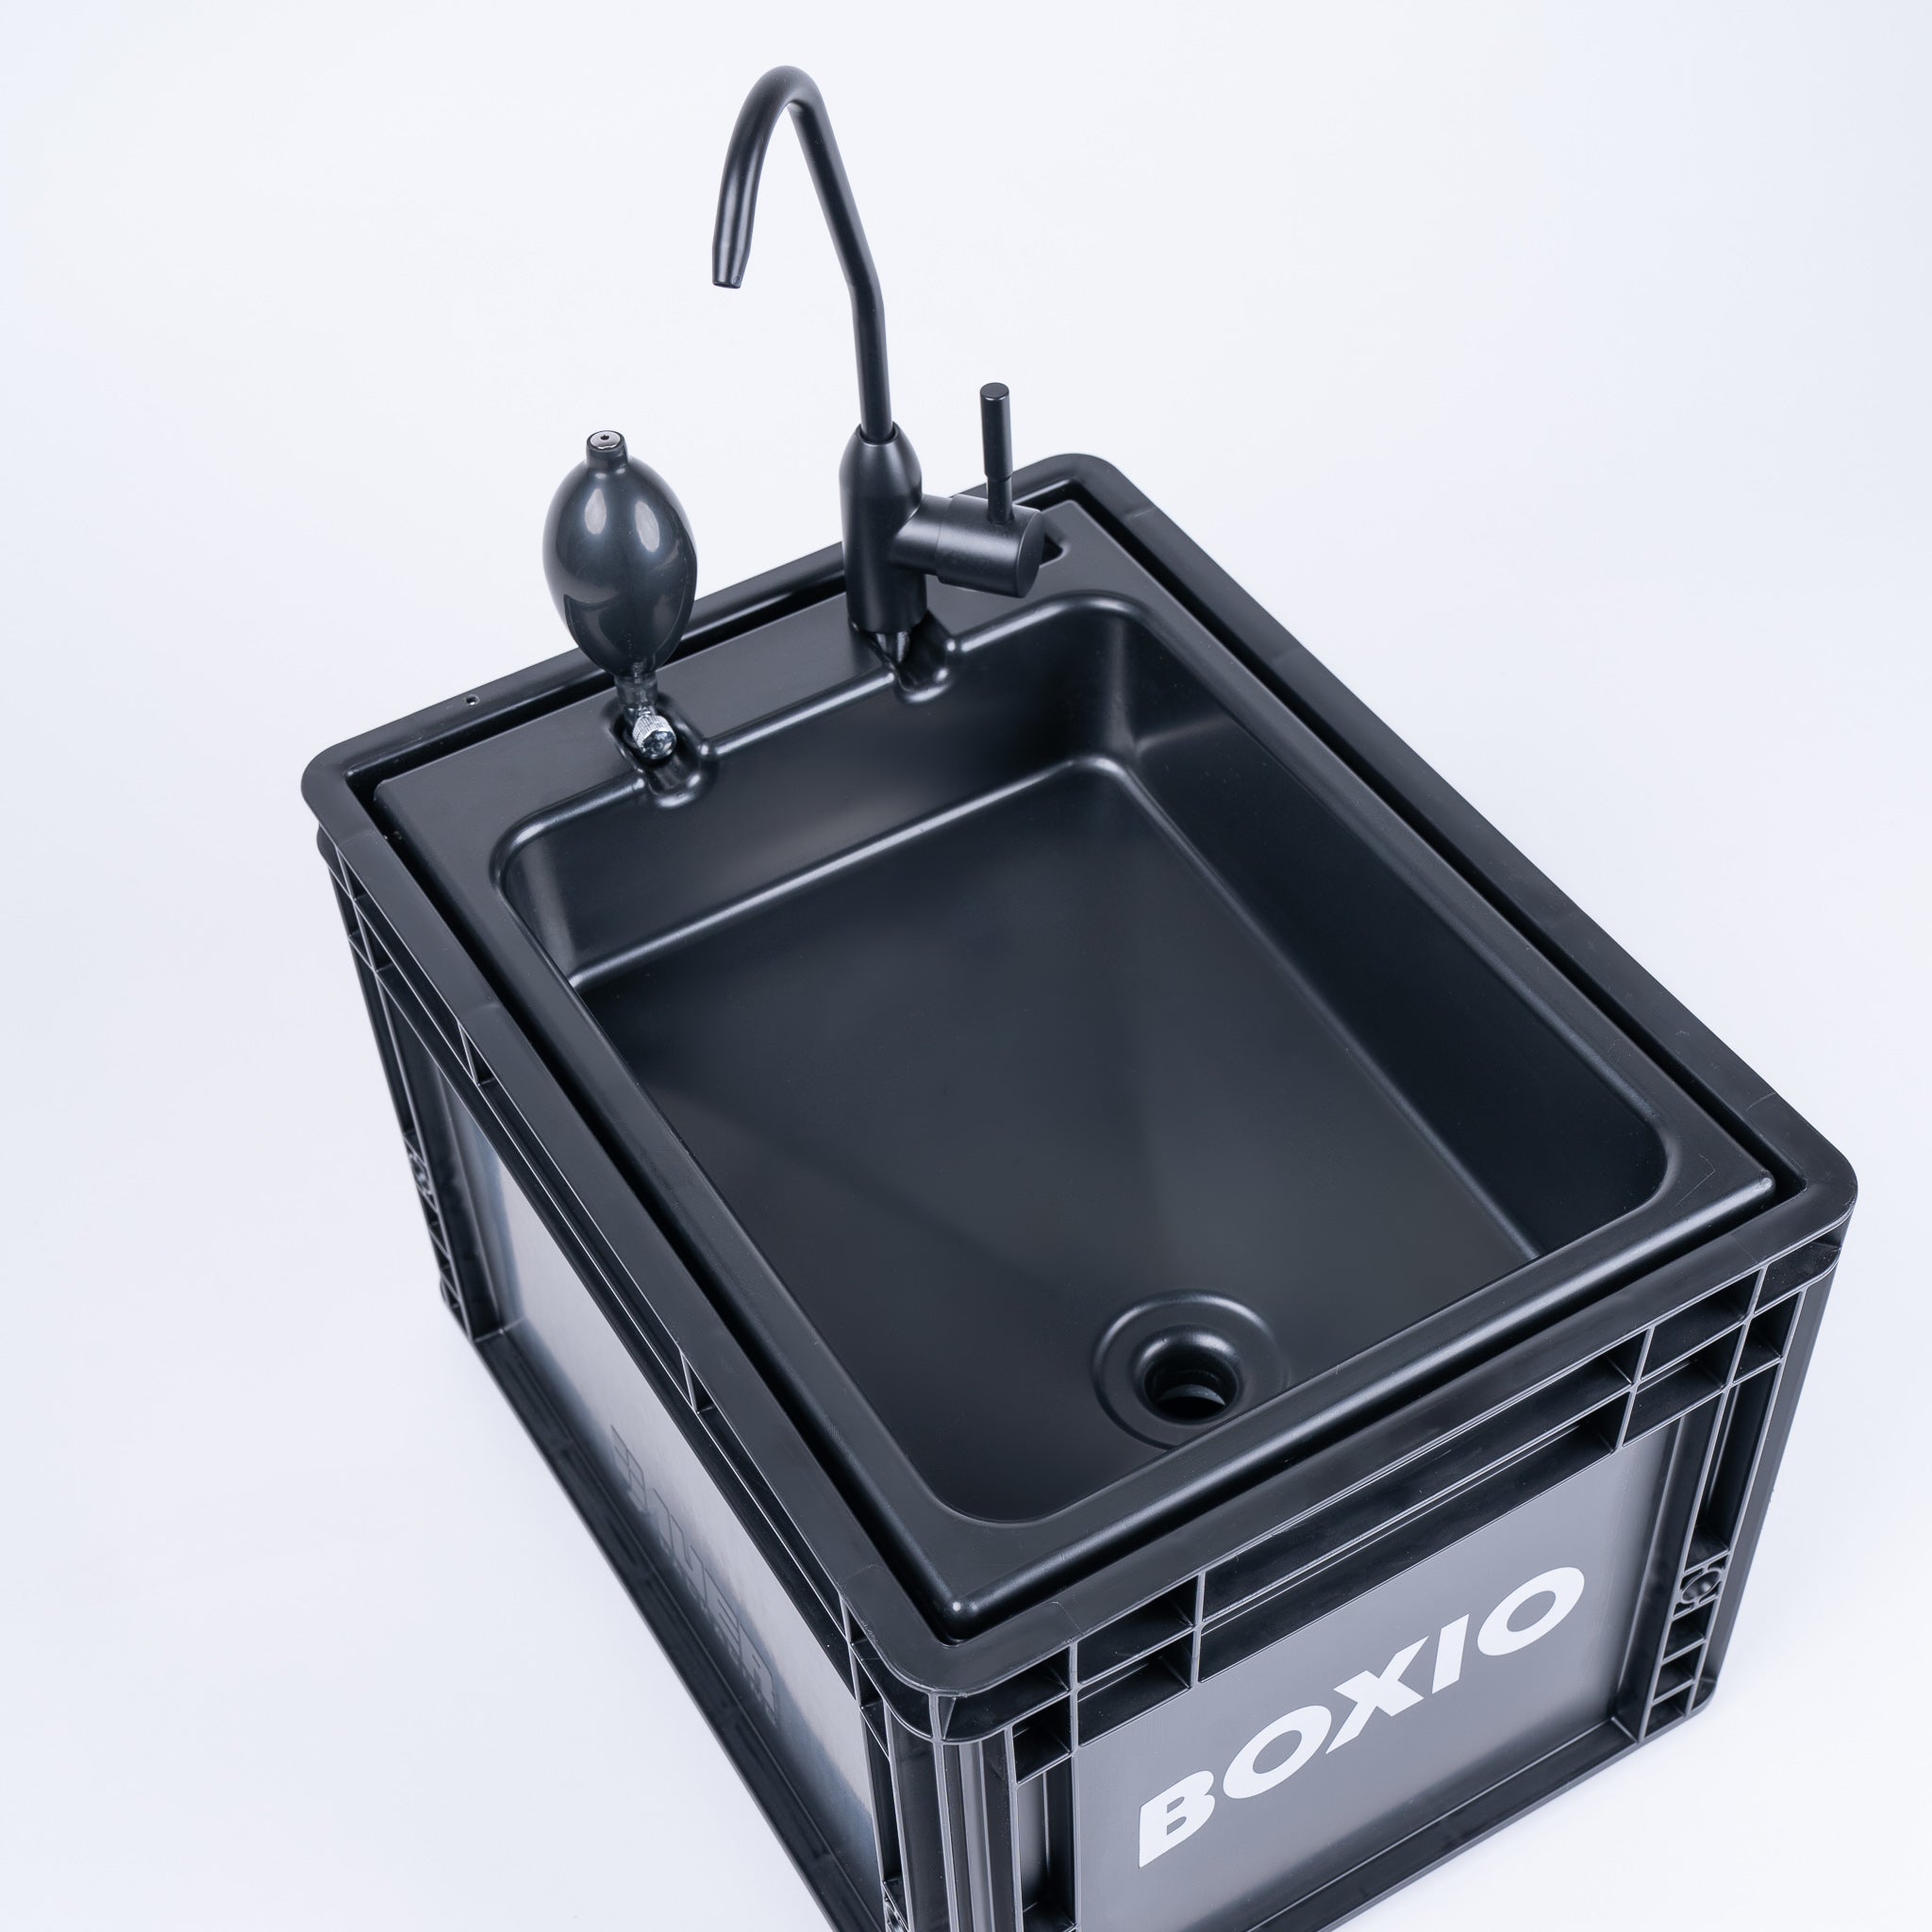 BOXIO - WASH: Su lavabo móvil